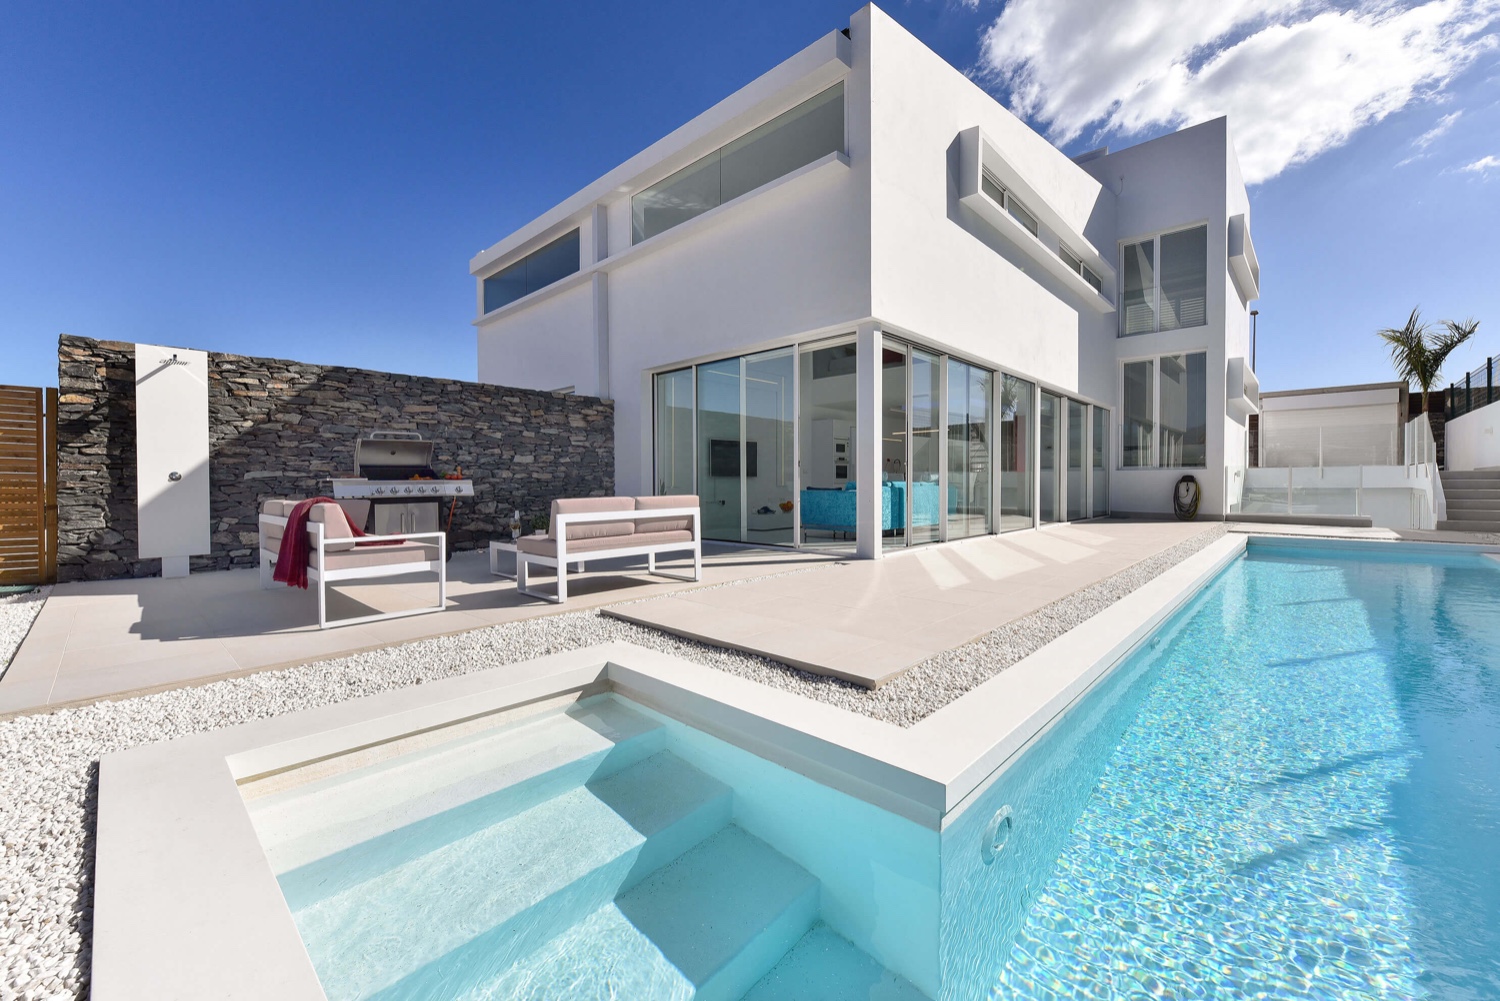 Splendide villa moderne pour 8 personnes avec équipement de haute qualité, grande piscine chauffée privée et emplacement idéal à quelques minutes de la plage de Meloneras et de Maspalomas